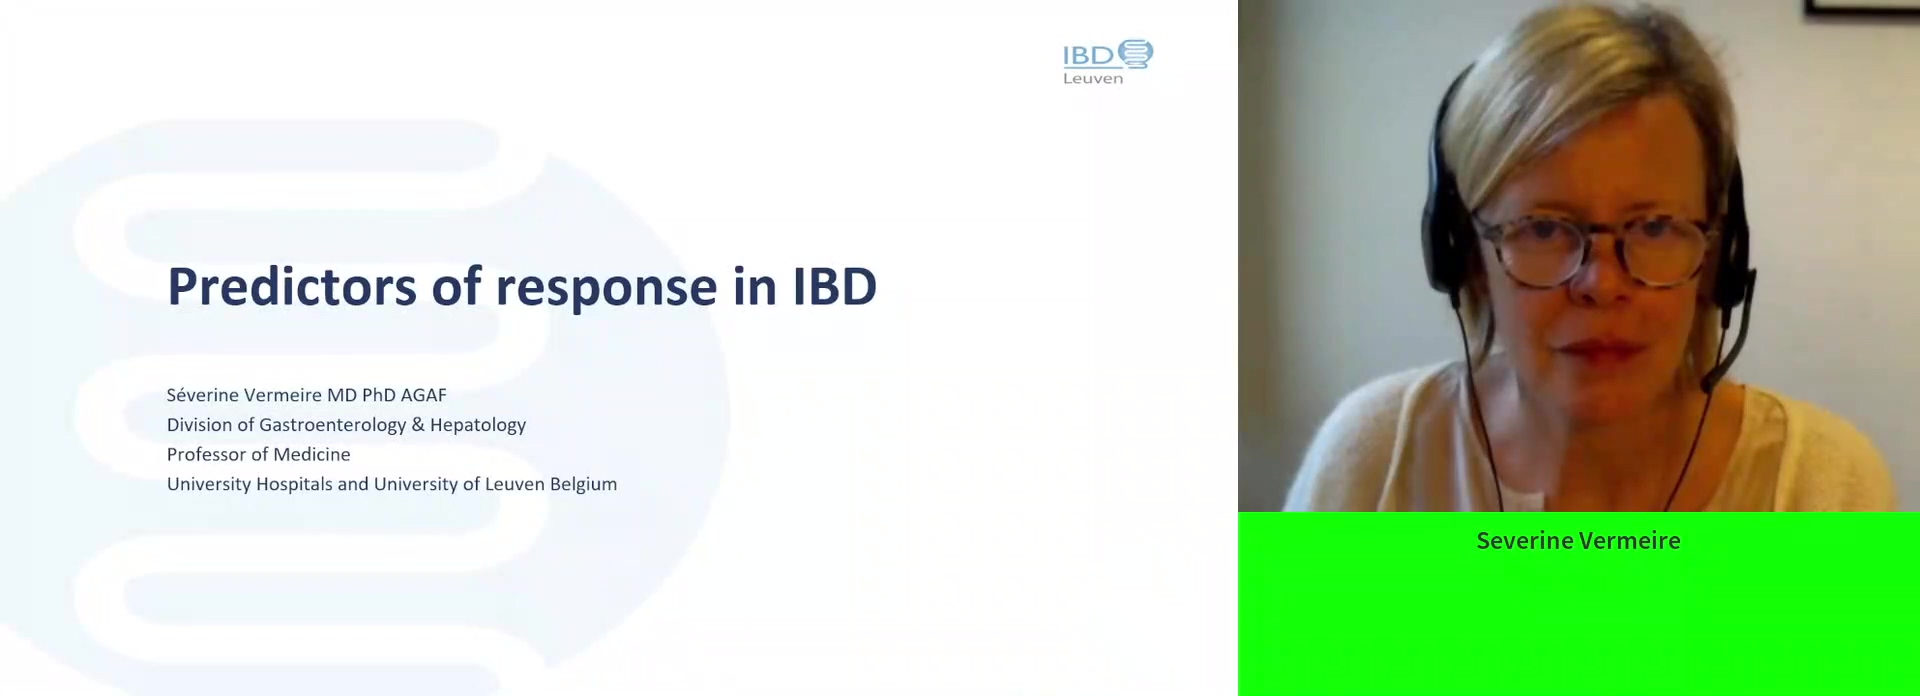 Predictors of response IBD